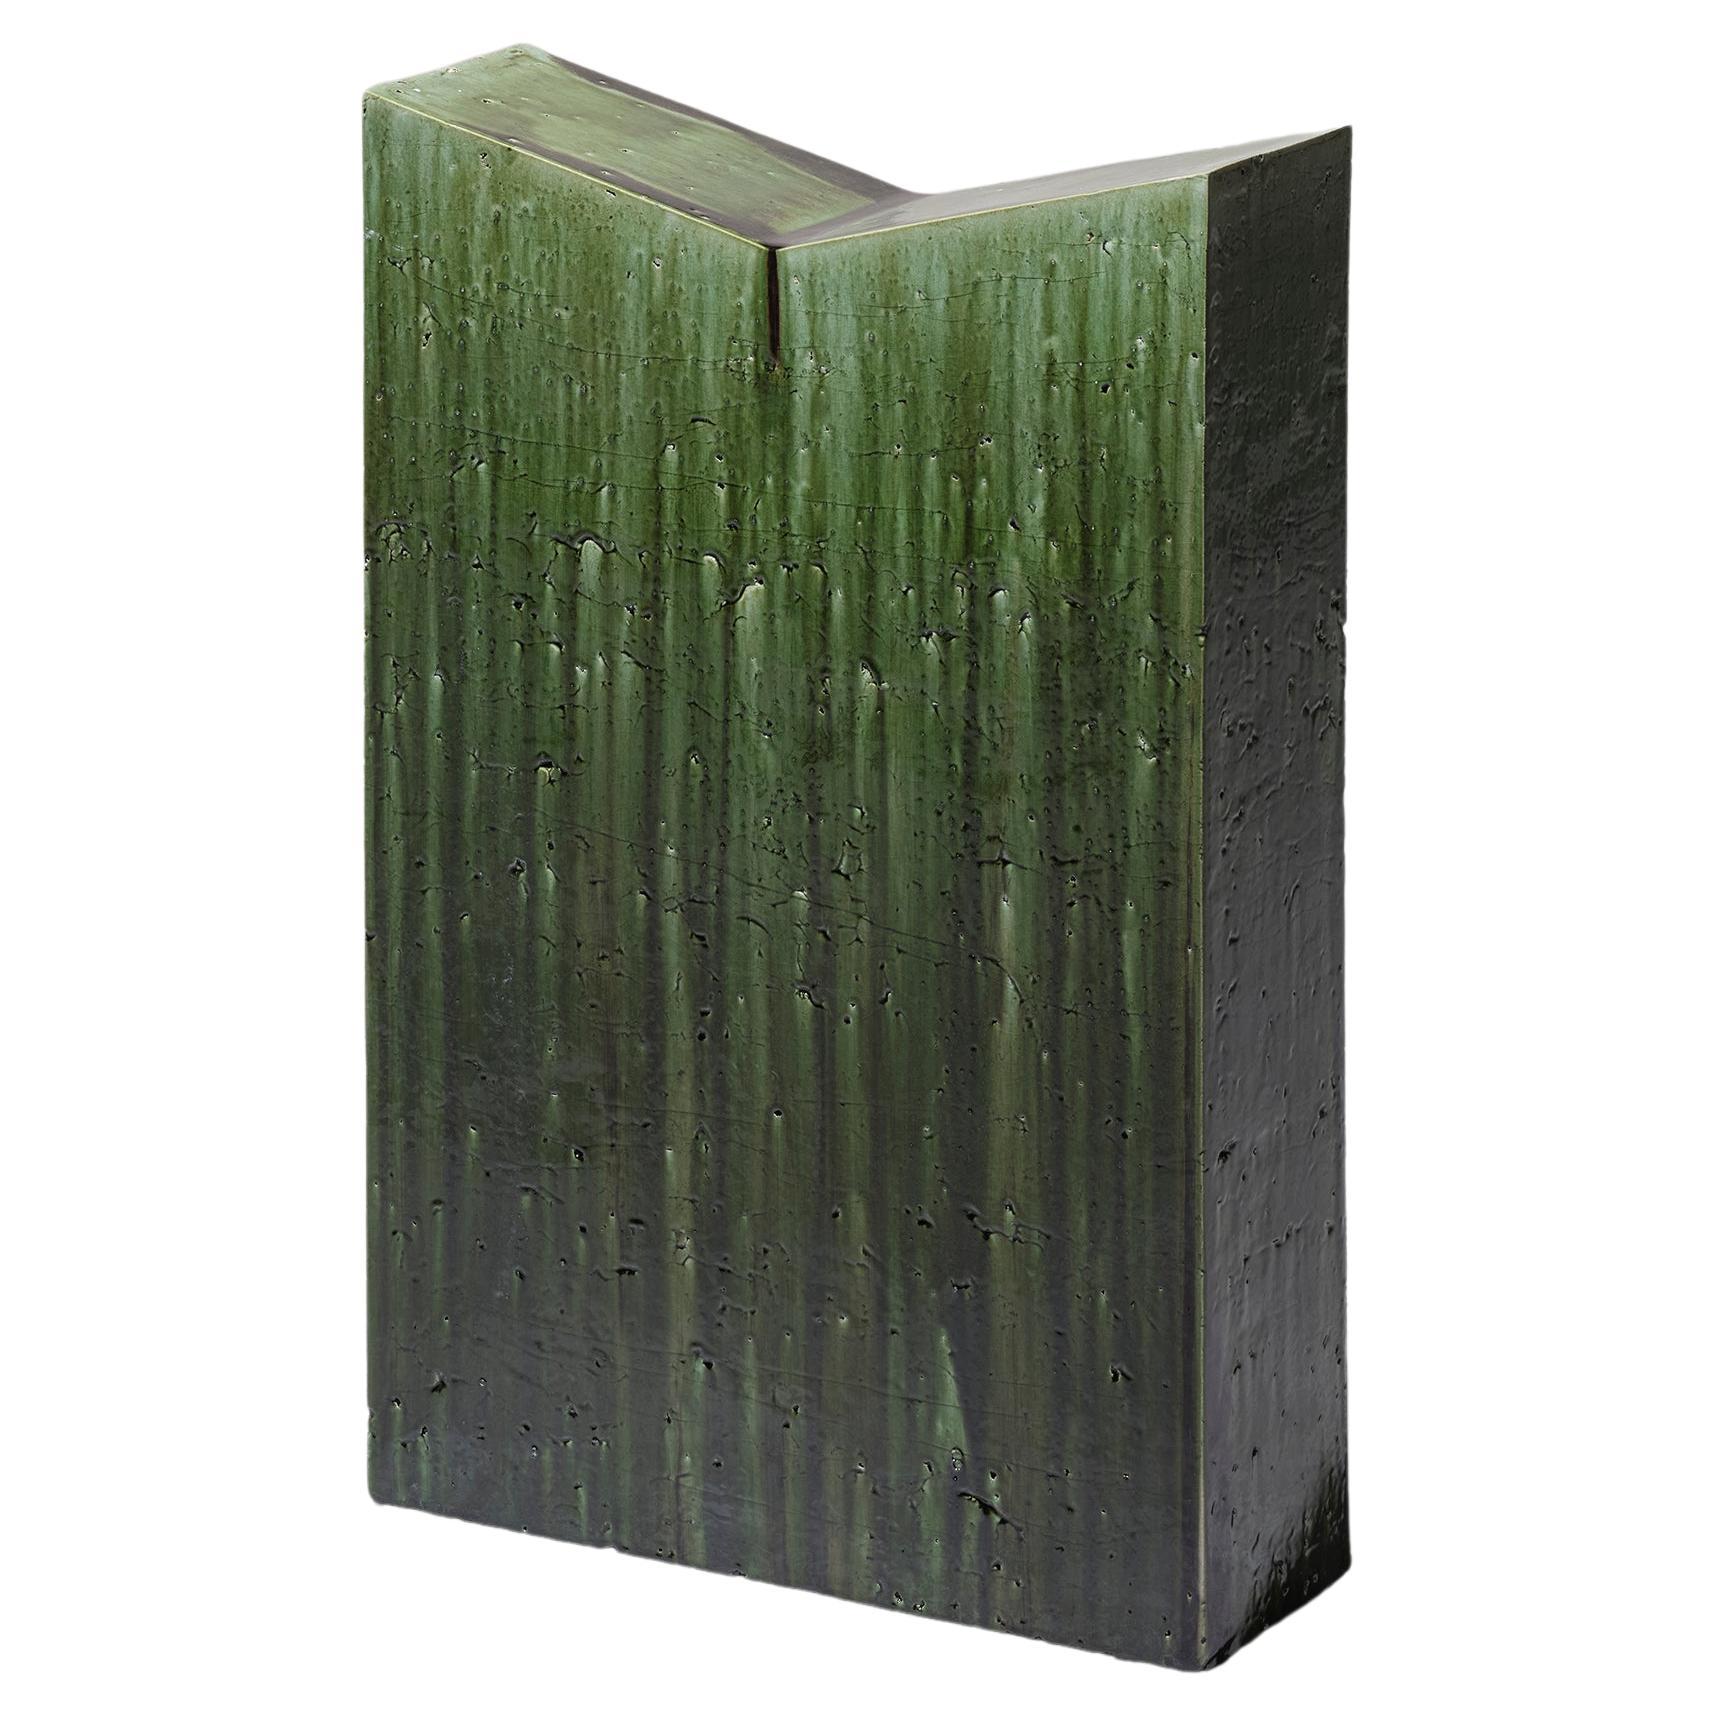 Lecterne de lecture contemporaine en céramique émaillée vert foncé moderne en vente